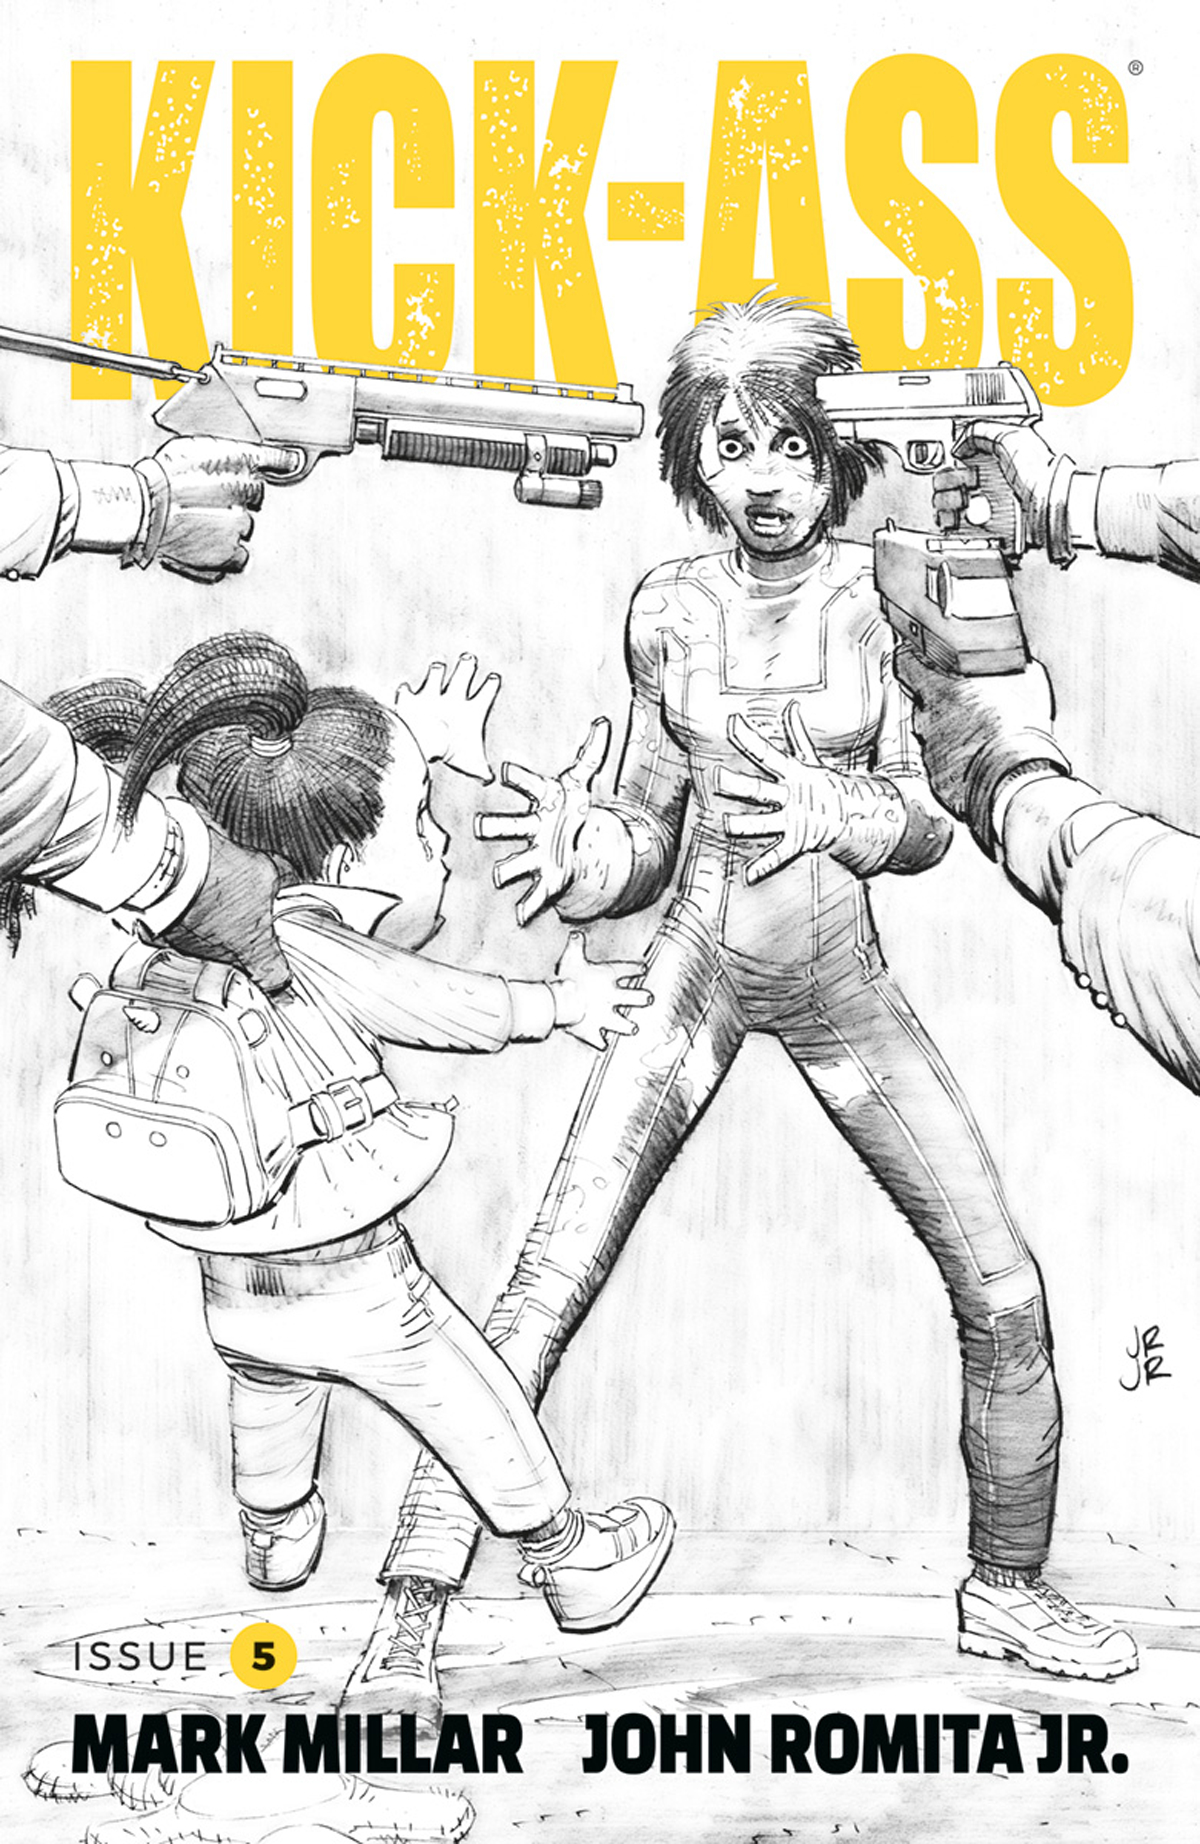 Cover A - Romita Jr Kick-Ass #5 